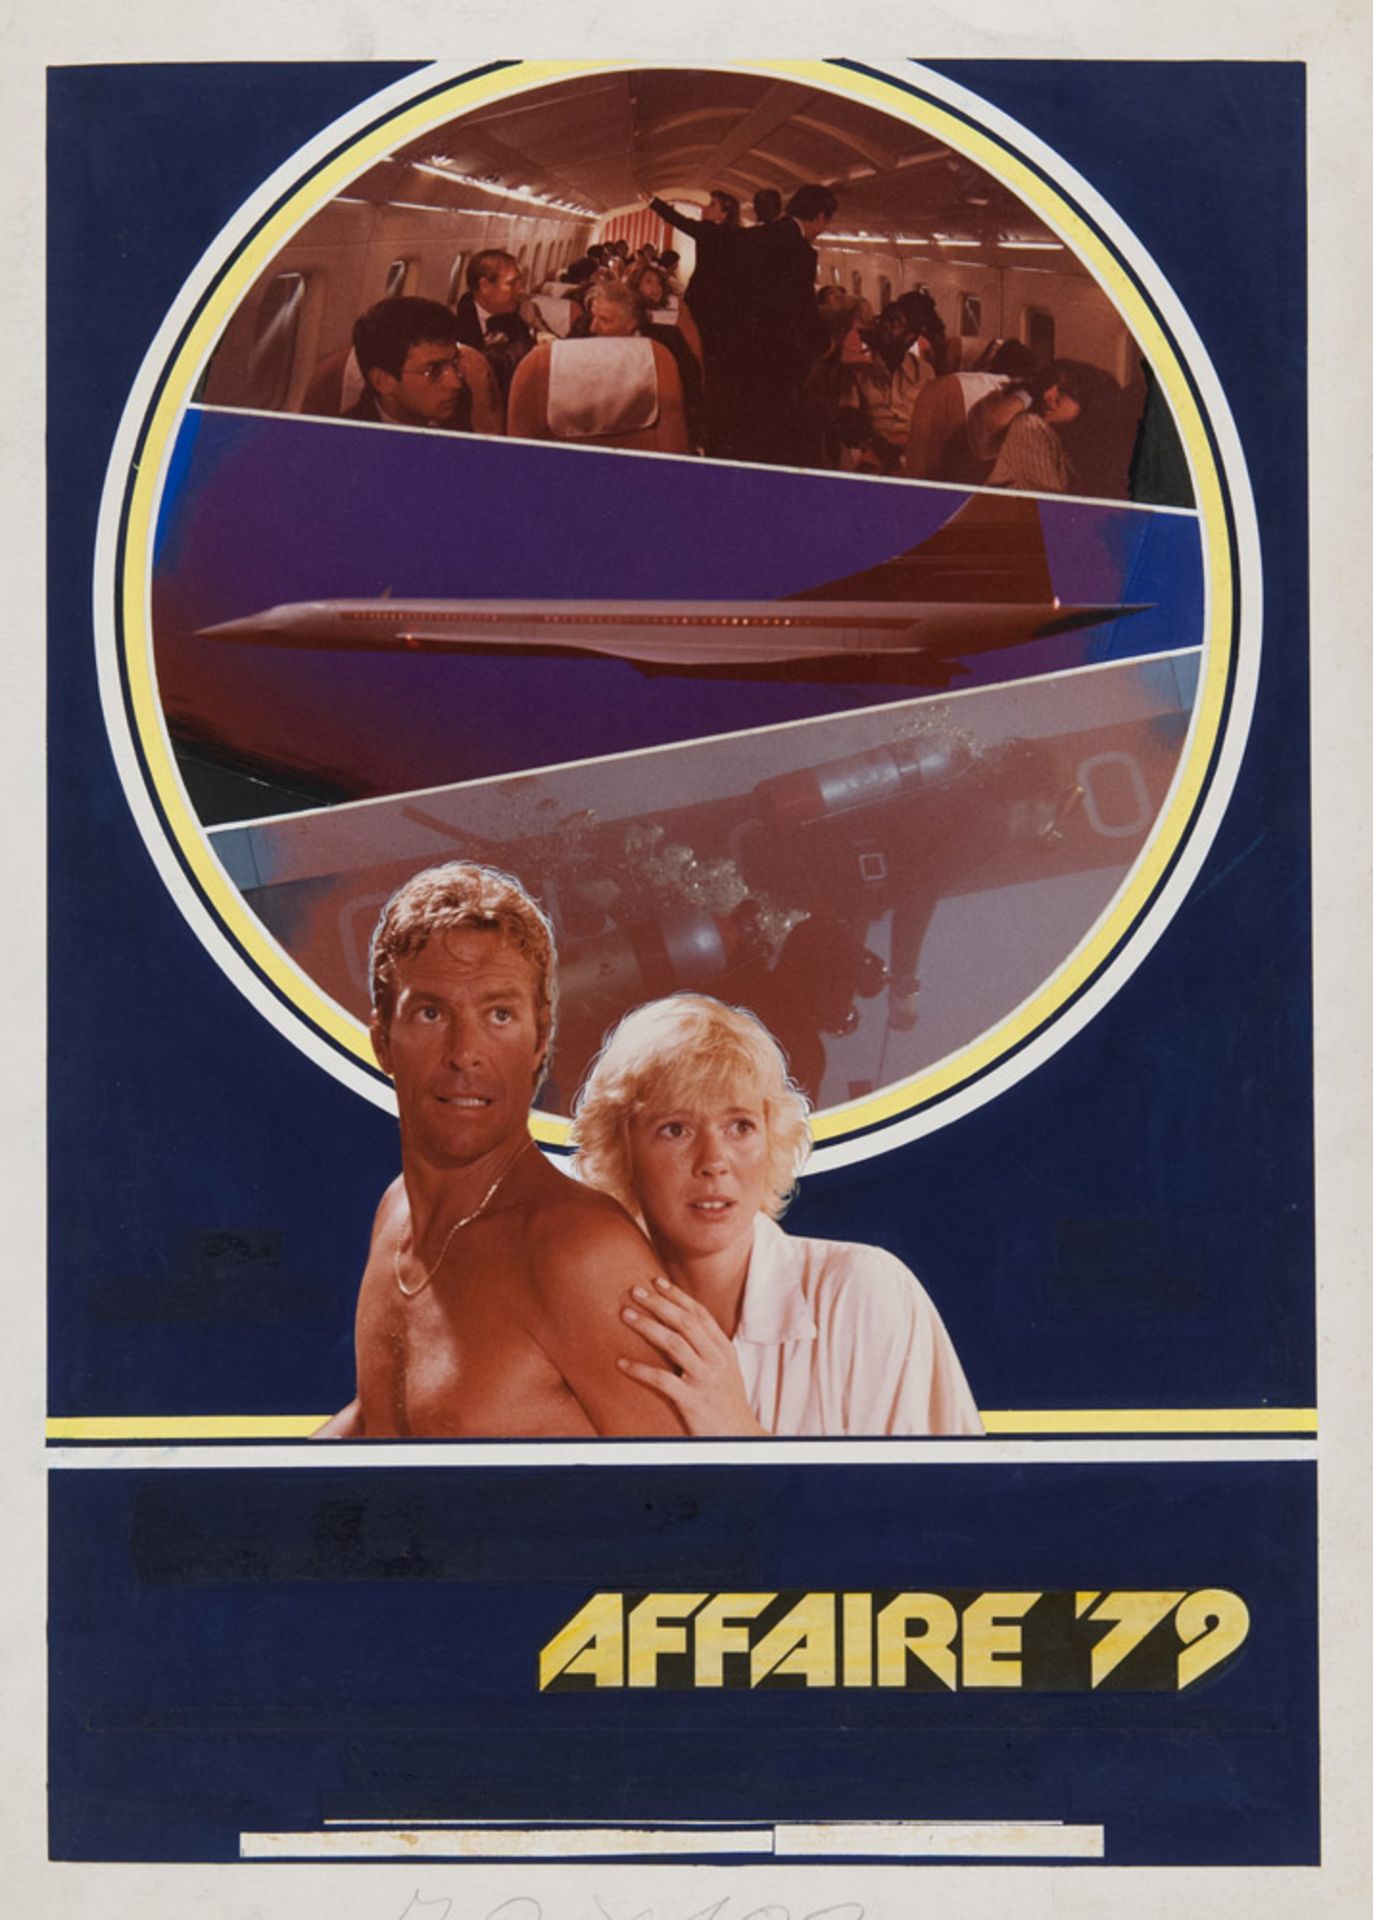 CONCORDE AFFAIRE '79 Bozzetto per il manifesto del film del 1979 diretto da Ruggero Deodato